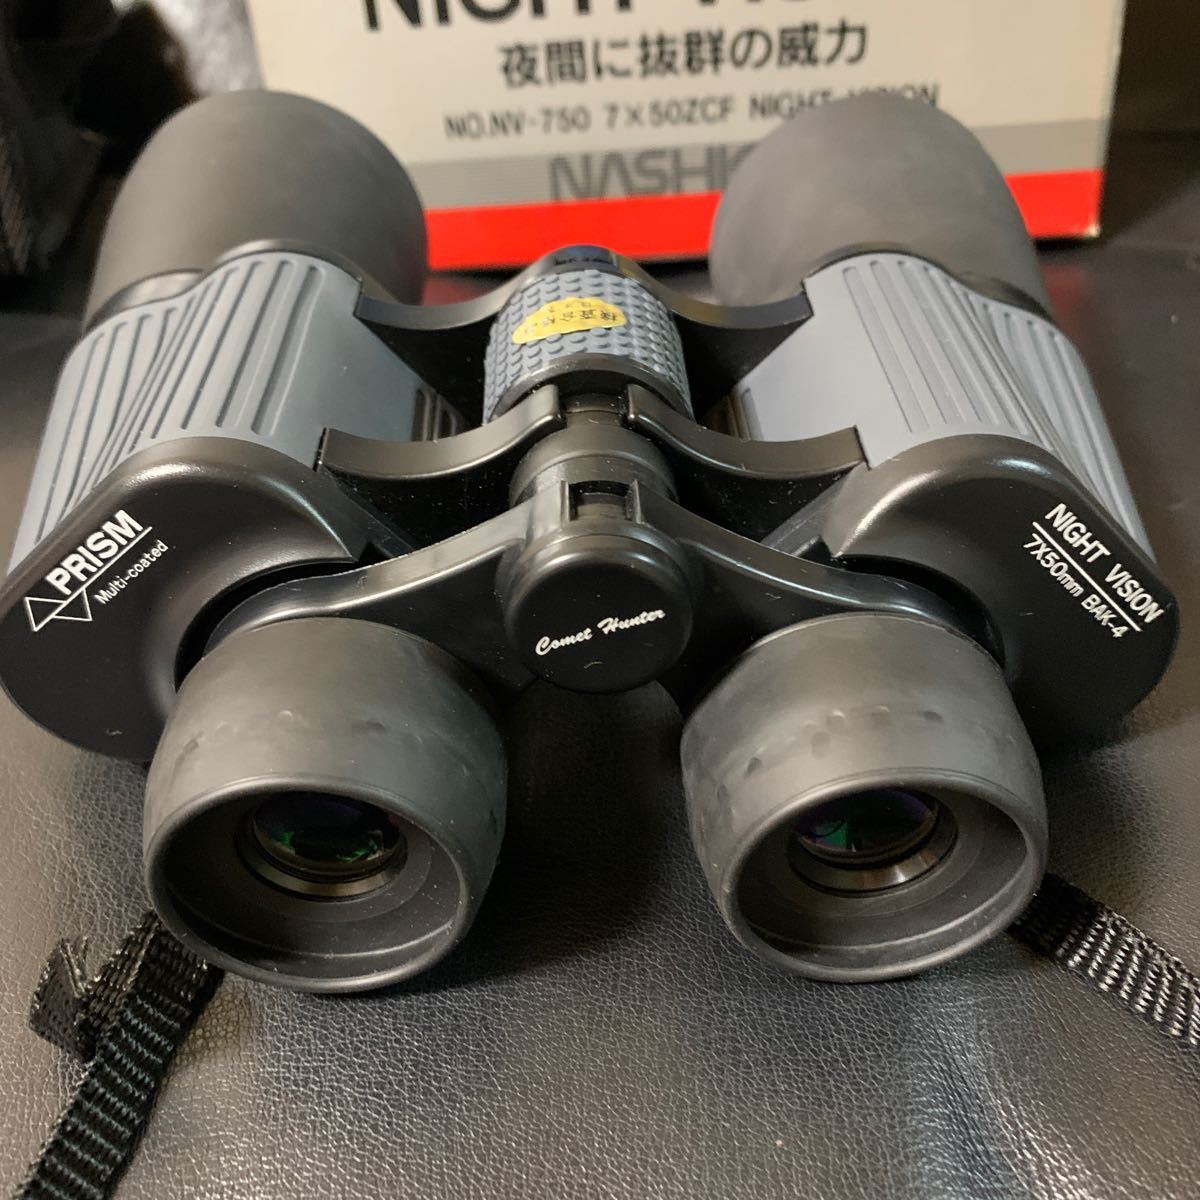 ナシカ ナイトビジョン プリズムNASHICA NO.NV750 7×50ZCF Bak-4 NIGHT VISION COMET HUNTER NIGHTSCOPE PRISM 双眼鏡ケース付 の画像10